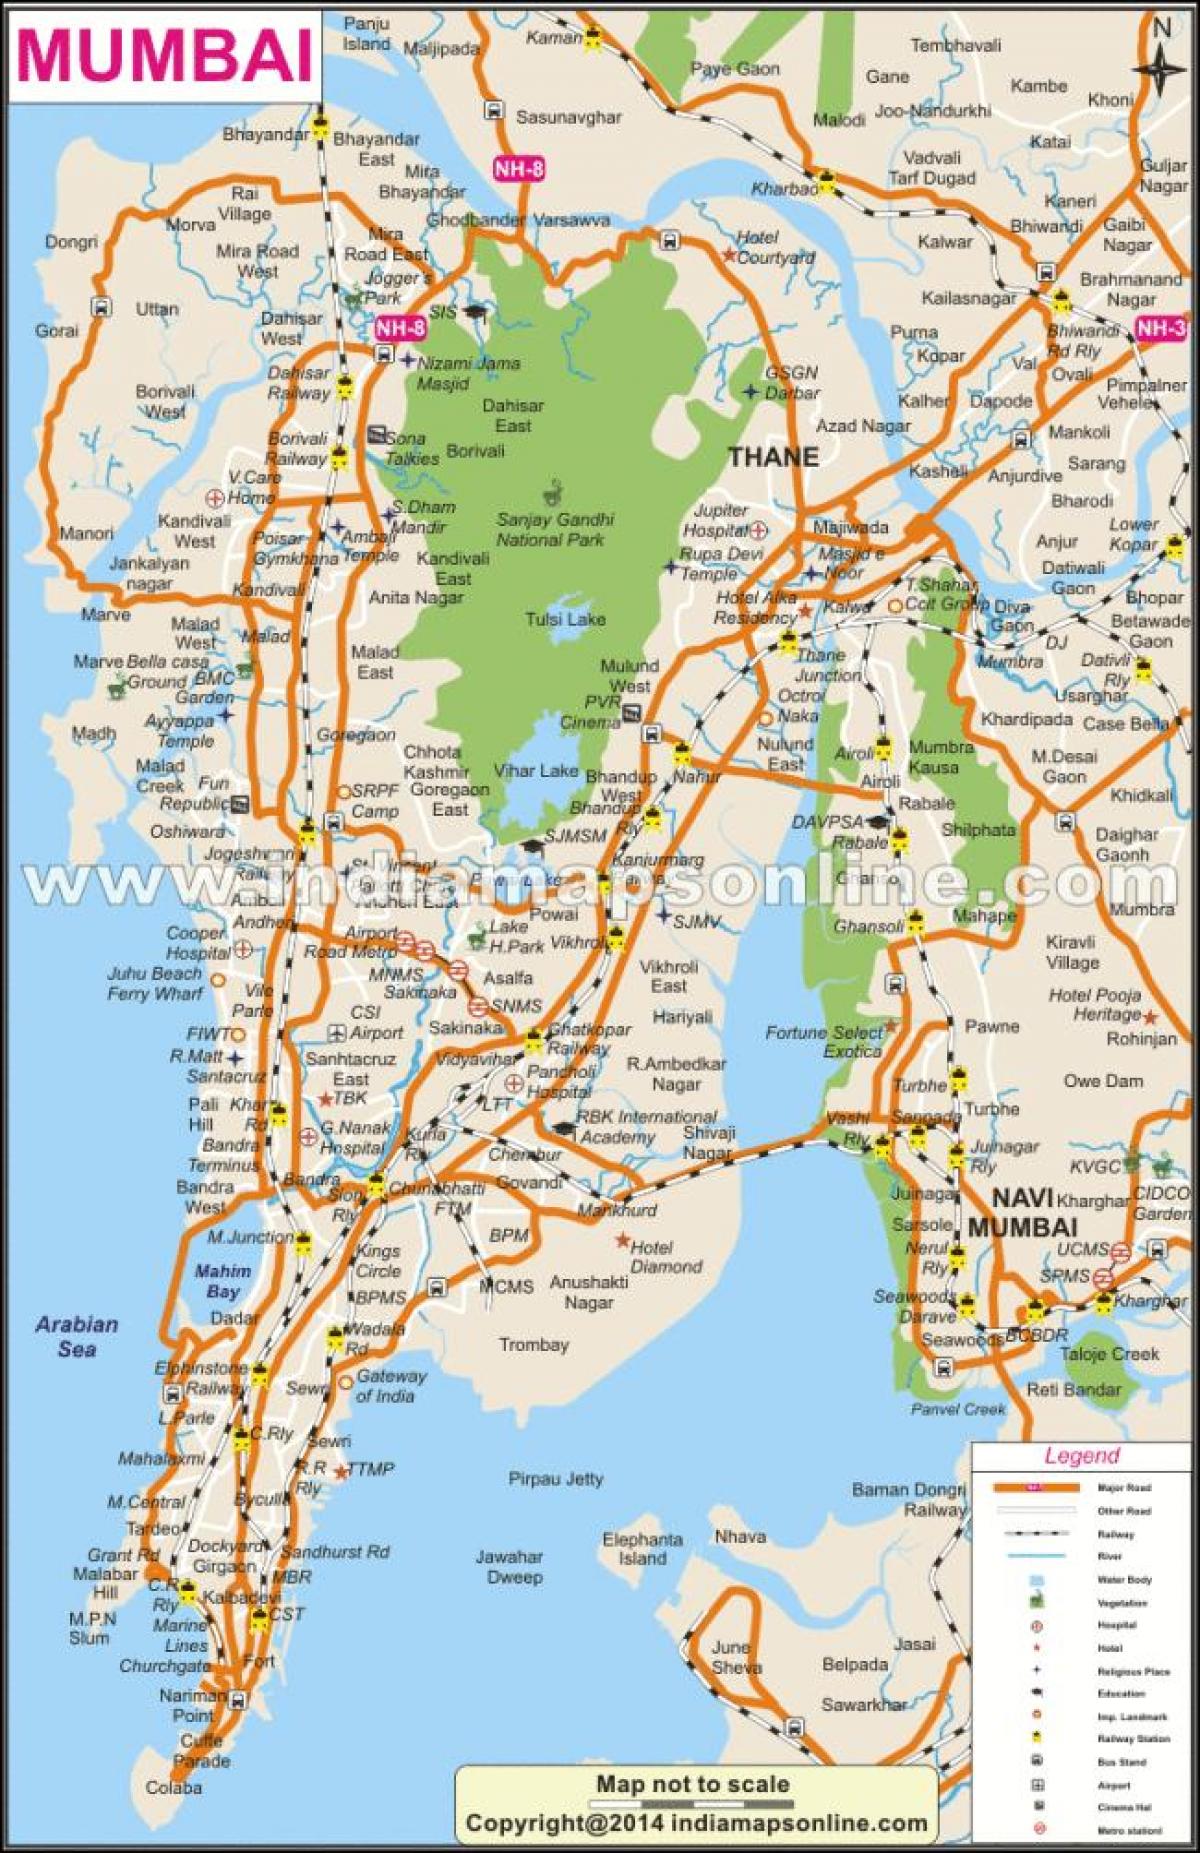 Mumbai trên bản đồ